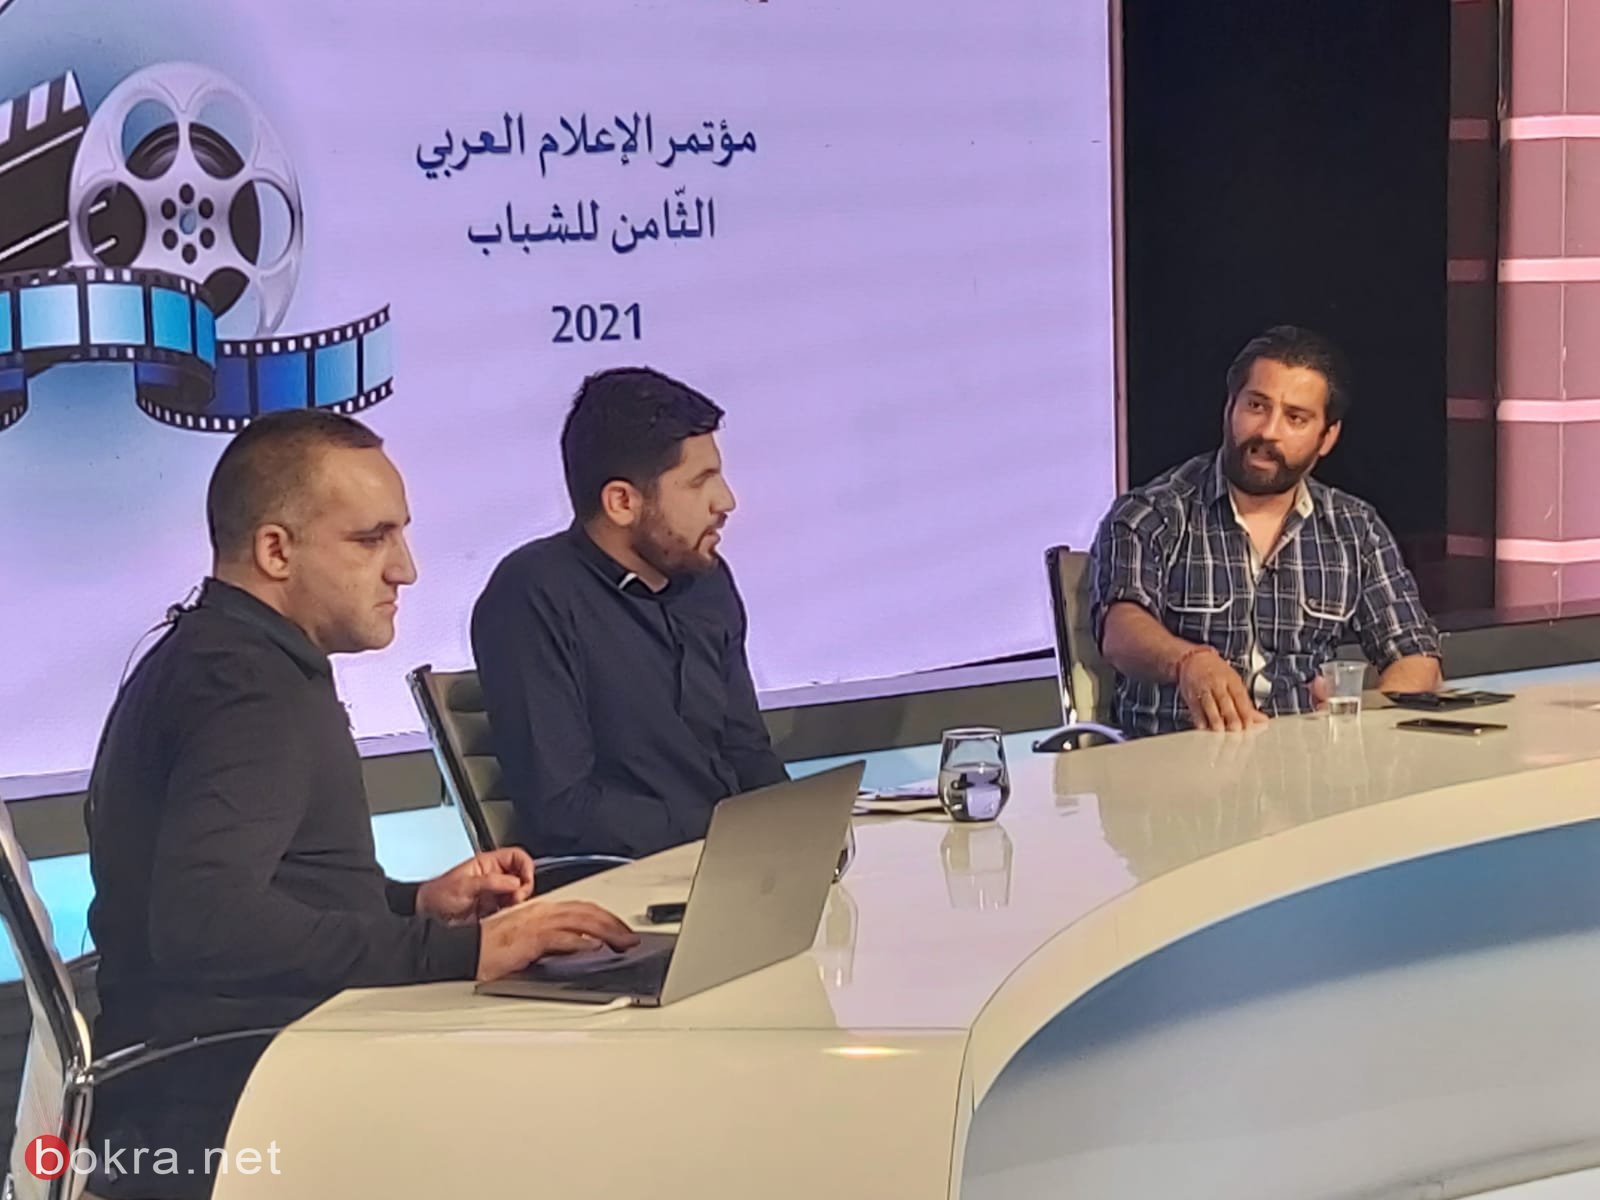 إنعقاد مؤتمر الإعلام العربي الثّامن للشباب في المدارس الثانوية العربية عبر منظومة الزوم-16